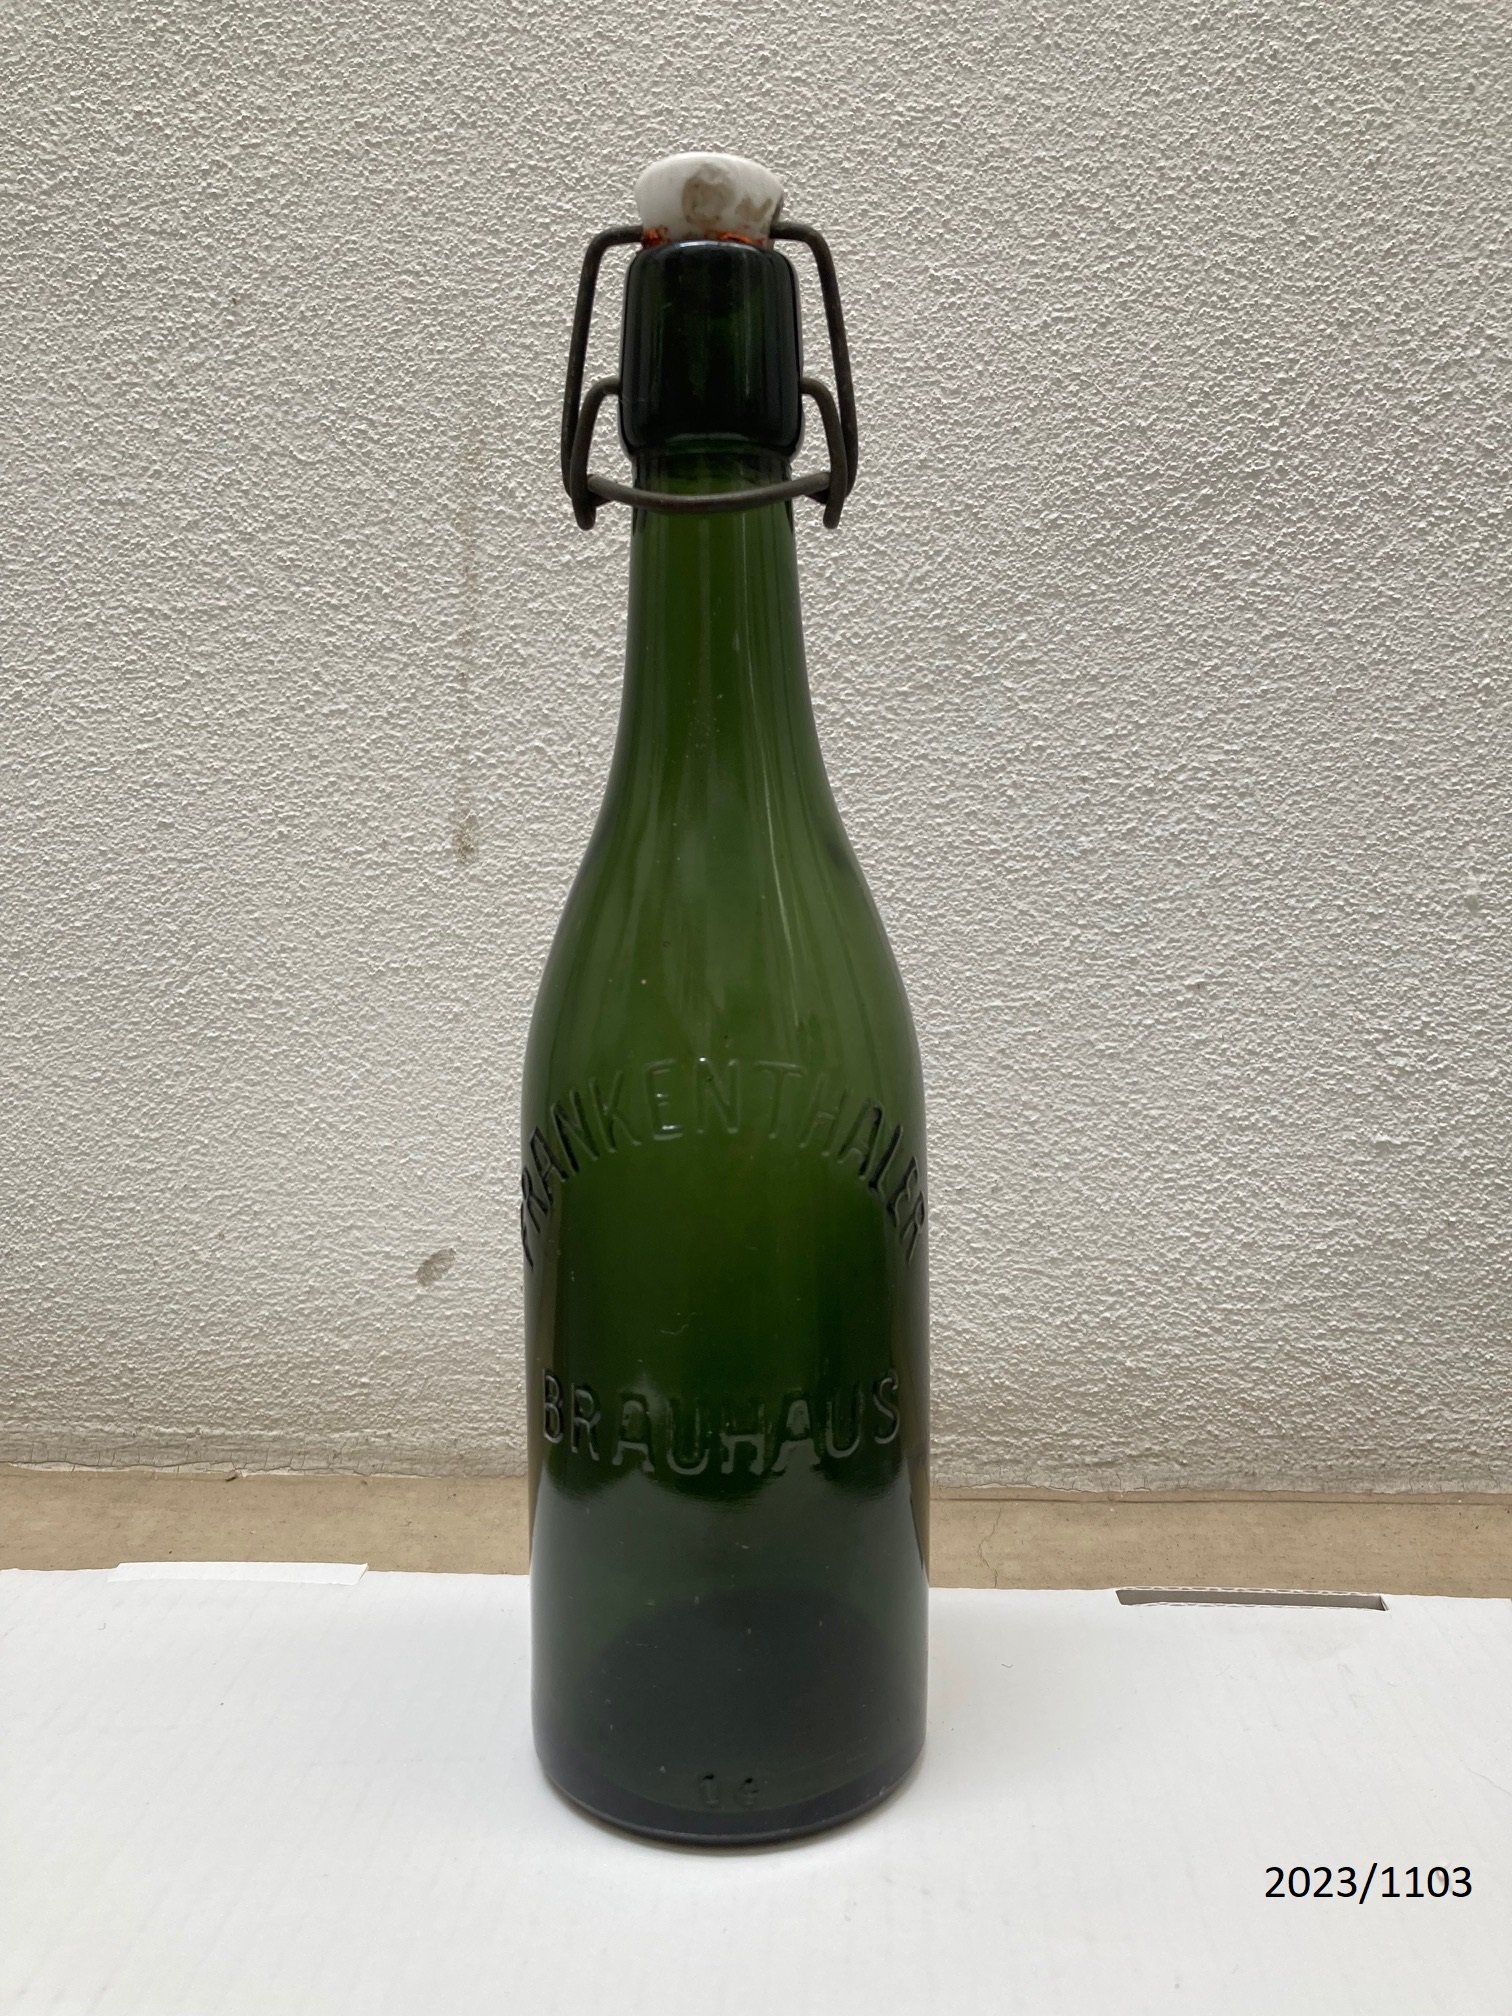 Bierflasche "Frankenthaler Brauhaus" 0,5 Liter (Stadtmuseum Bad Dürkheim im Kulturzentrum Haus Catoir CC BY-NC-SA)